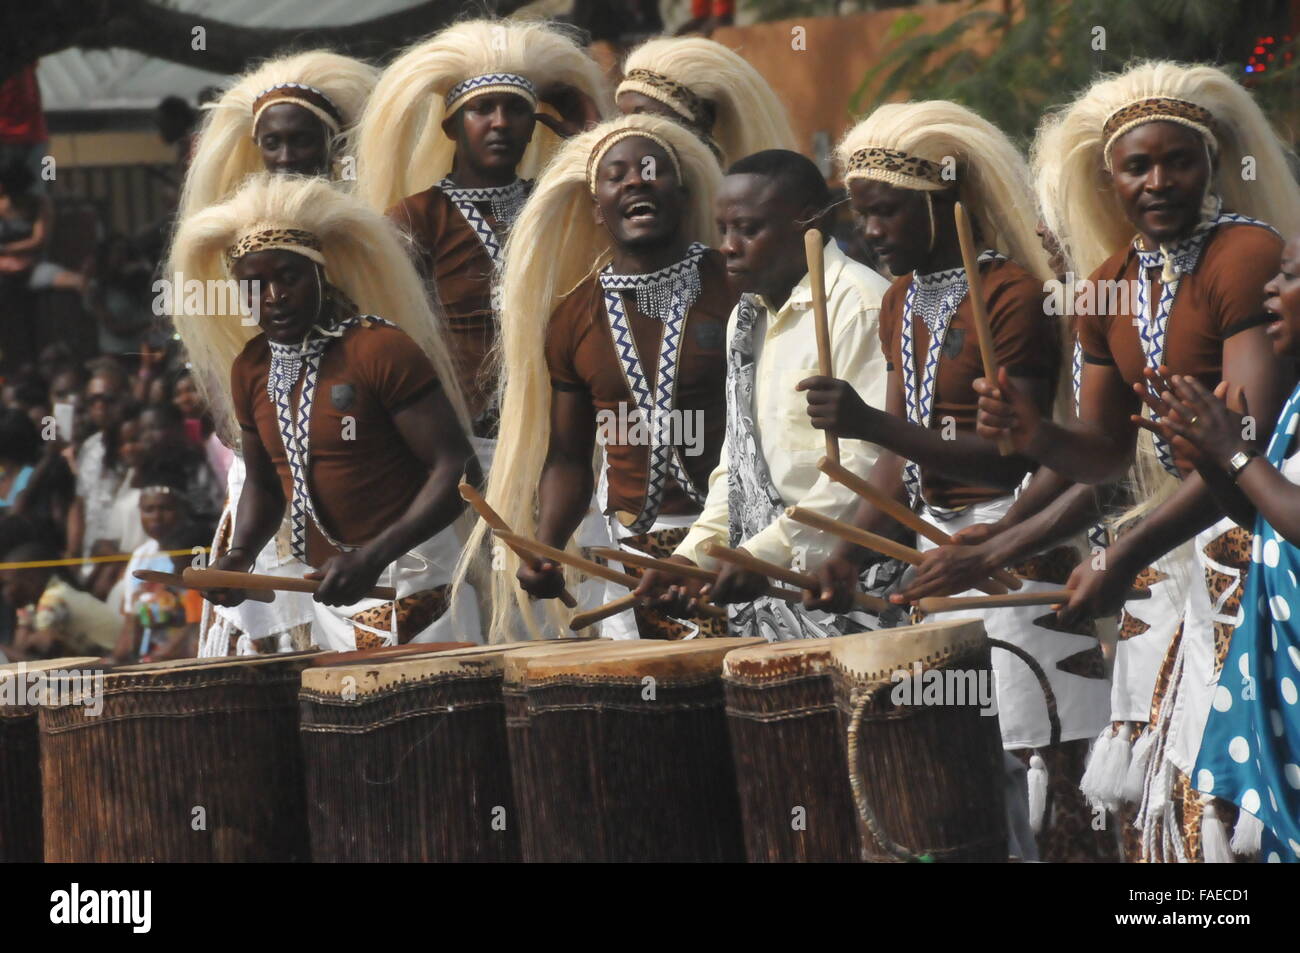 (151228)--CALABAR(NIGERIA), 28. Dezember 2015 (Xinhua)--Darsteller spielen Trommeln während der Parade von Calabar Karneval in Calabar, die Hauptstadt des Cross River State im südöstlichen Nigeria, 28. Dezember 2015. Calabar Karneval, markiert auch "Afrikas größte Street Party", begann am Montag in Calabar und Zehntausende von lokalen Bewohner Festzug. Künstler aus Italien, Brasilien, Spanien, Kenia und Simbabwe nahmen an der Veranstaltung teil. (Xinhua/Jiang Xintong) Stockfoto